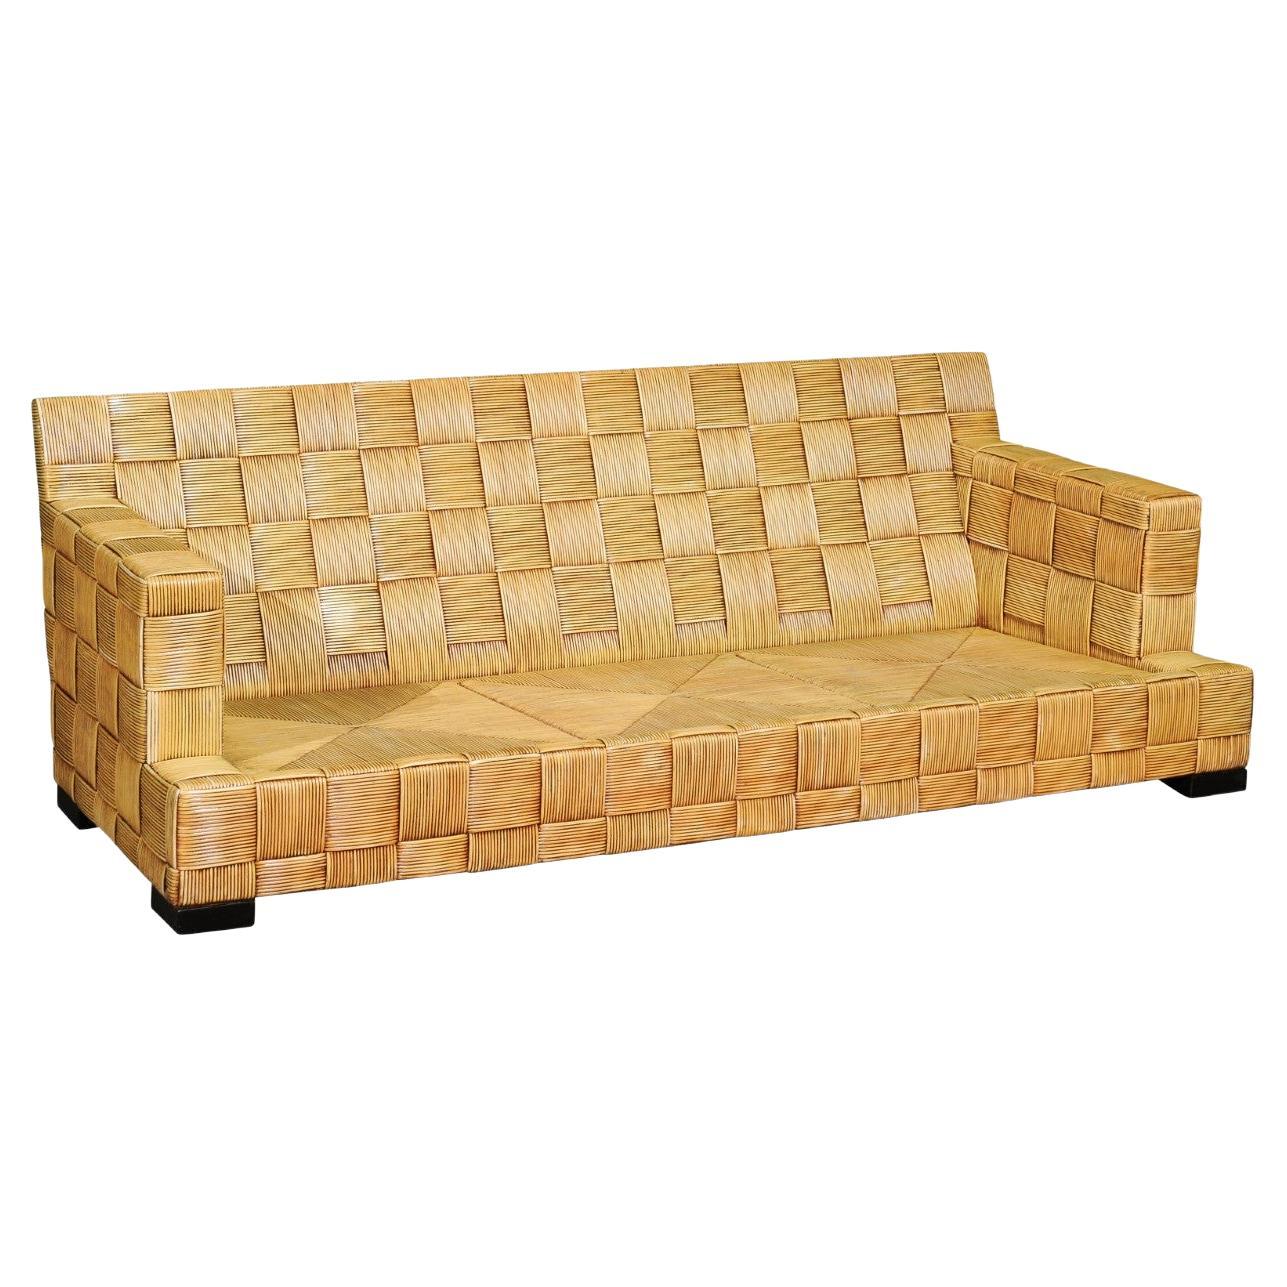 Stellar Block Island Collection Rohr-Sofa von Hutton für Donghia, Paar verfügbar